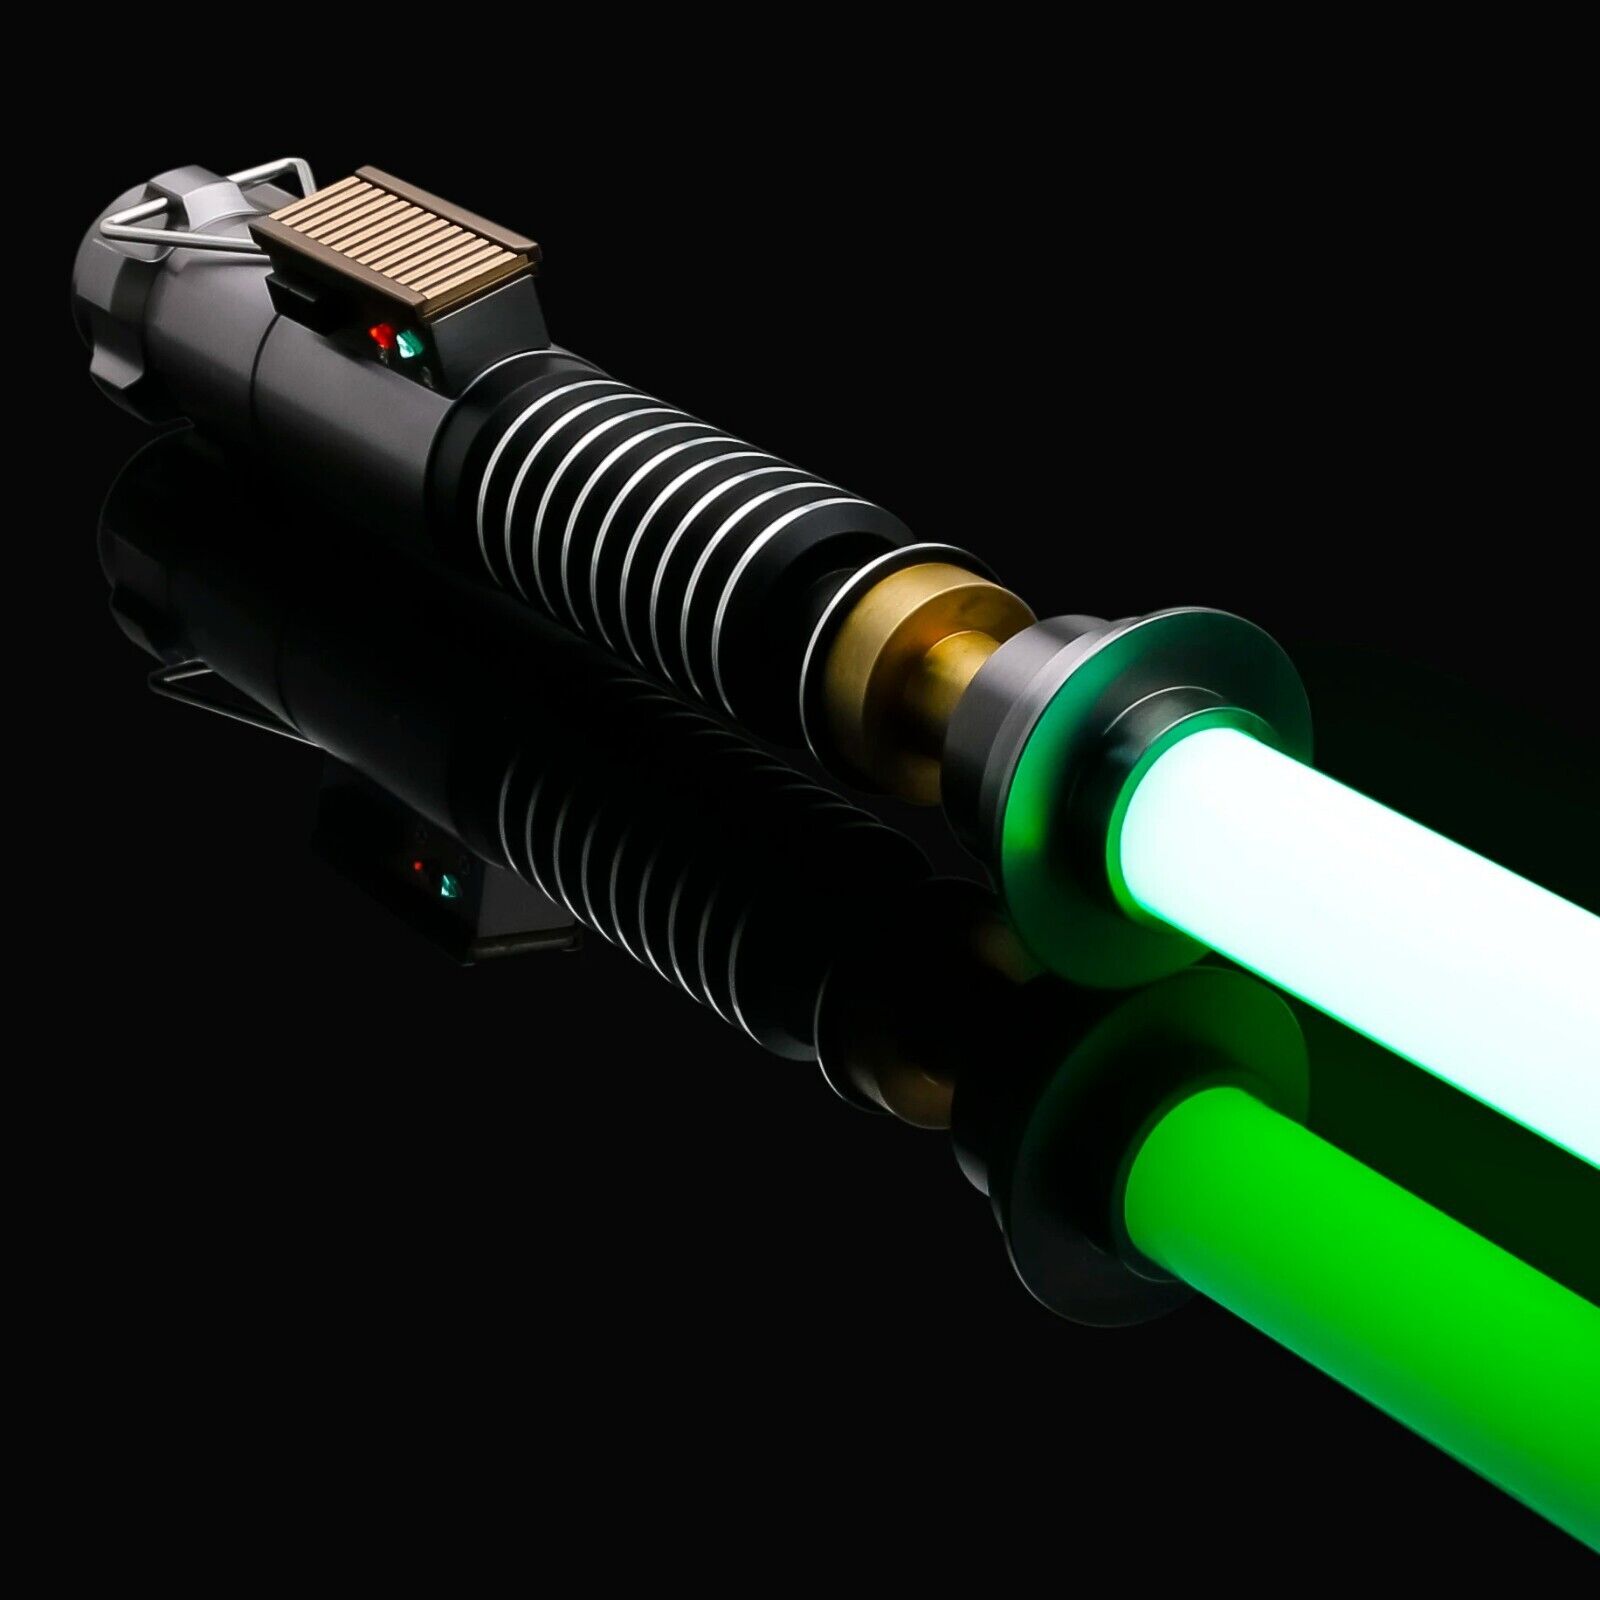 Star Wars Luke Skywalker ROTJ Heavy Dueling Lightsaber Metal Replica Handle